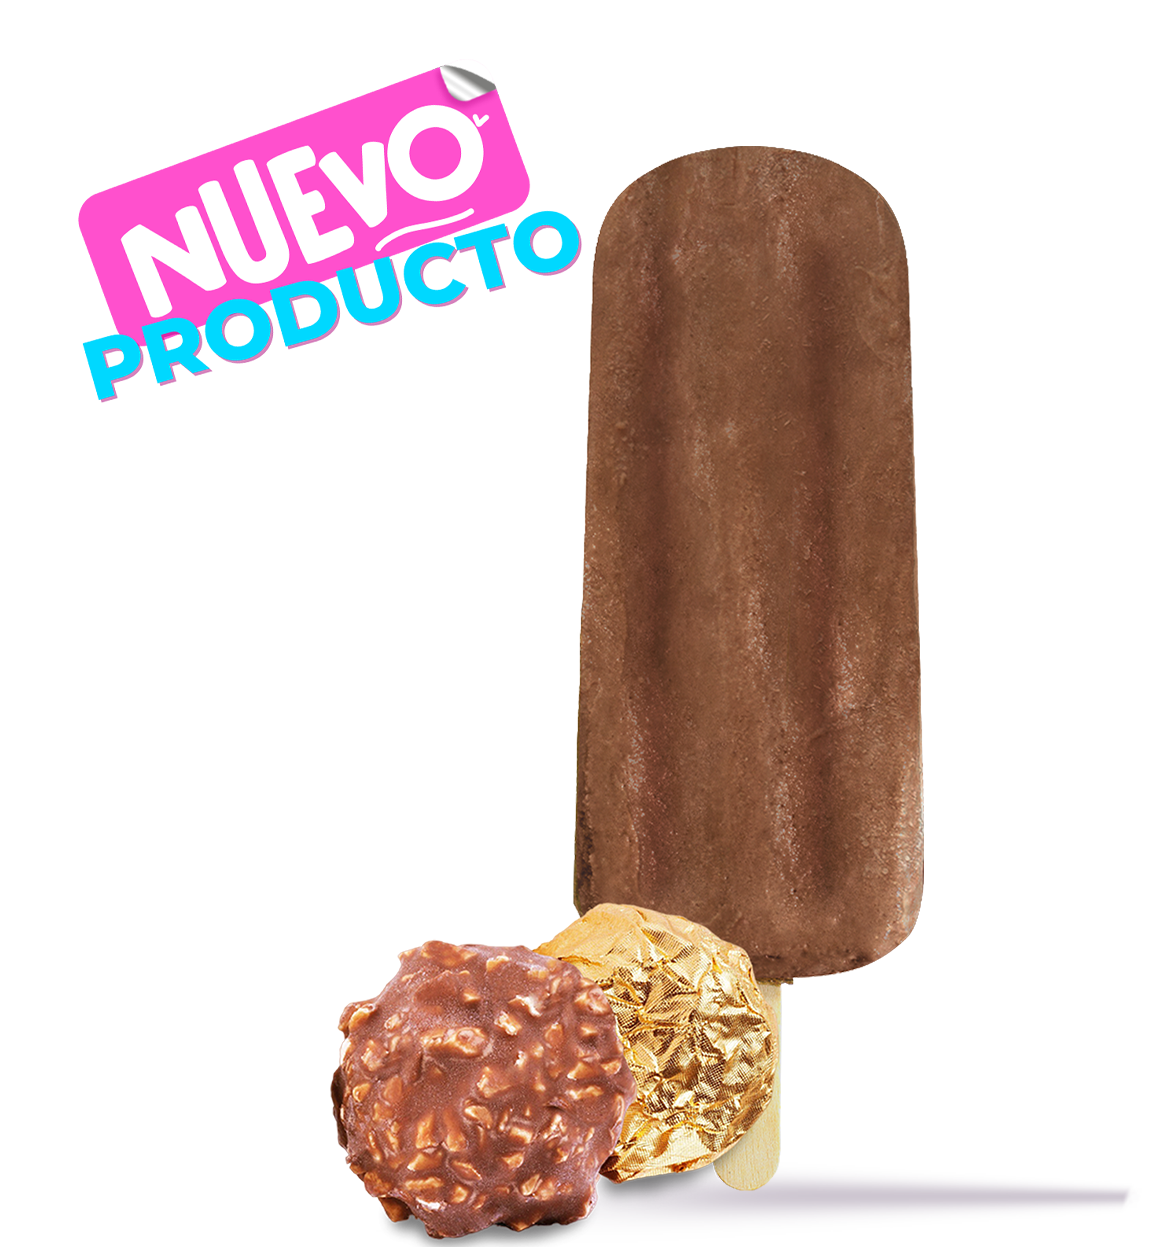 NUEVA – Paleta de Crema Ferrero